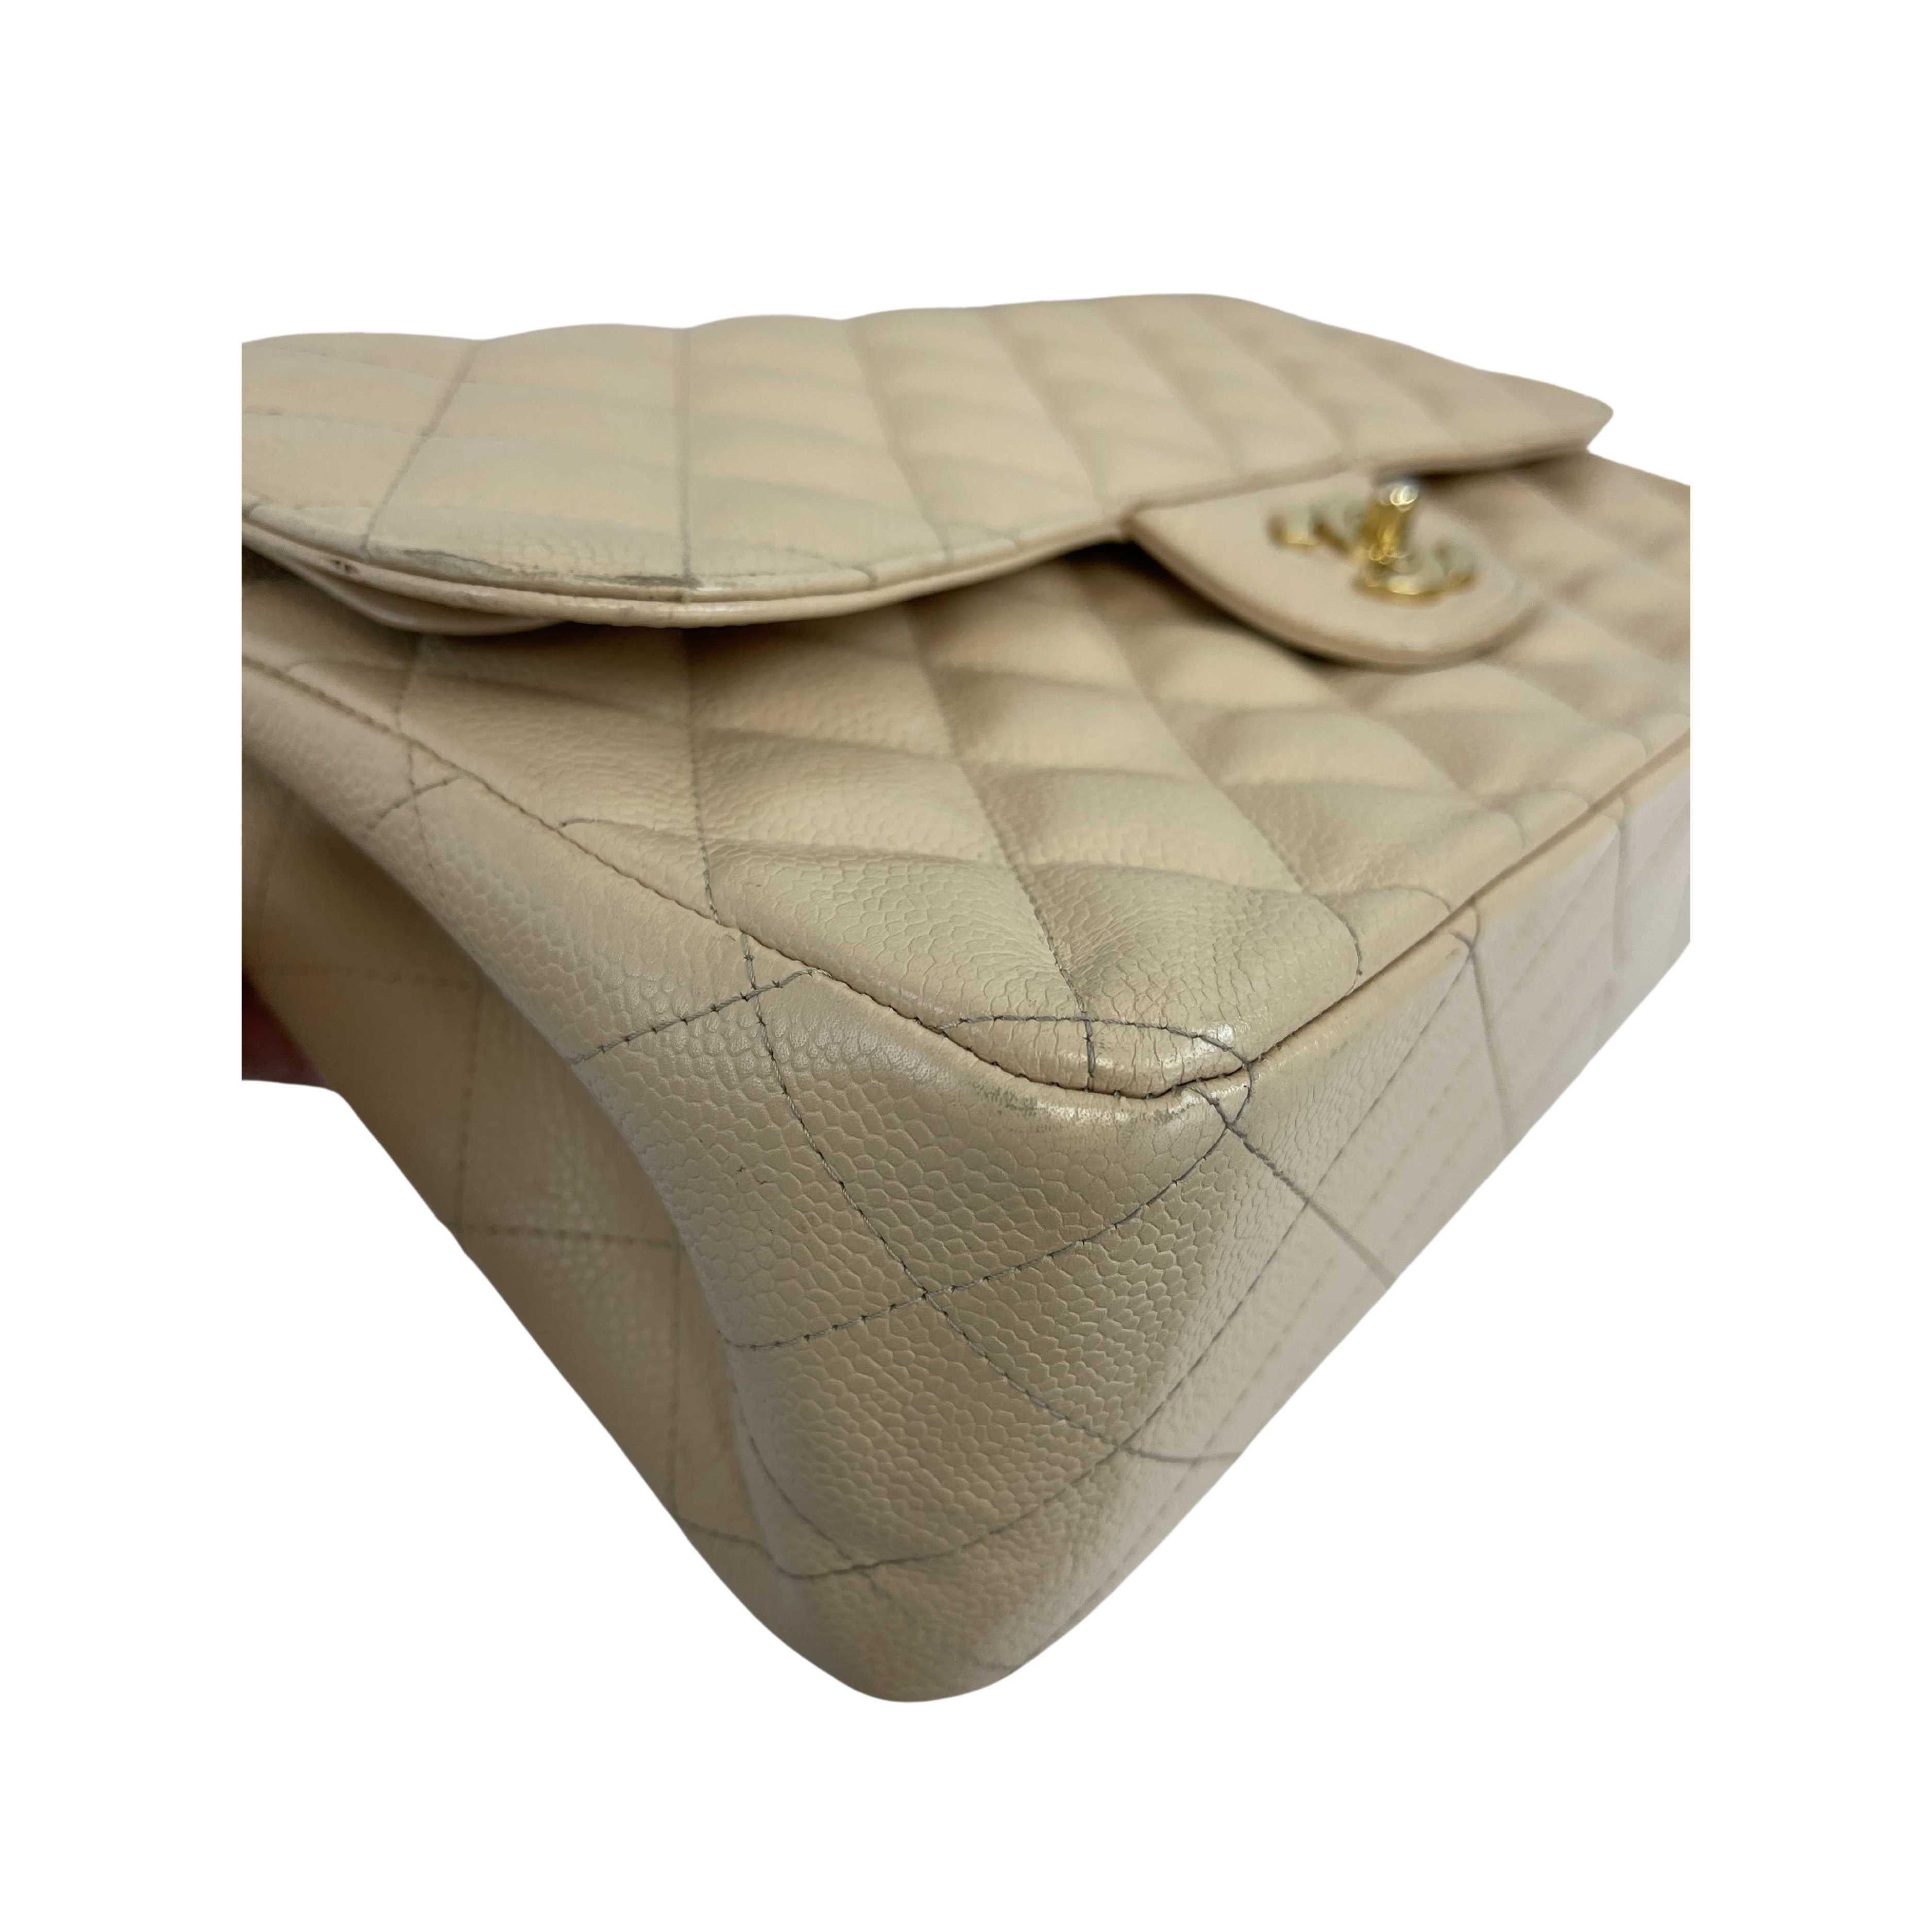 CHANEL - Large CC Caviar Leather Double Flap Tan Shoulder Bag For Sale 3